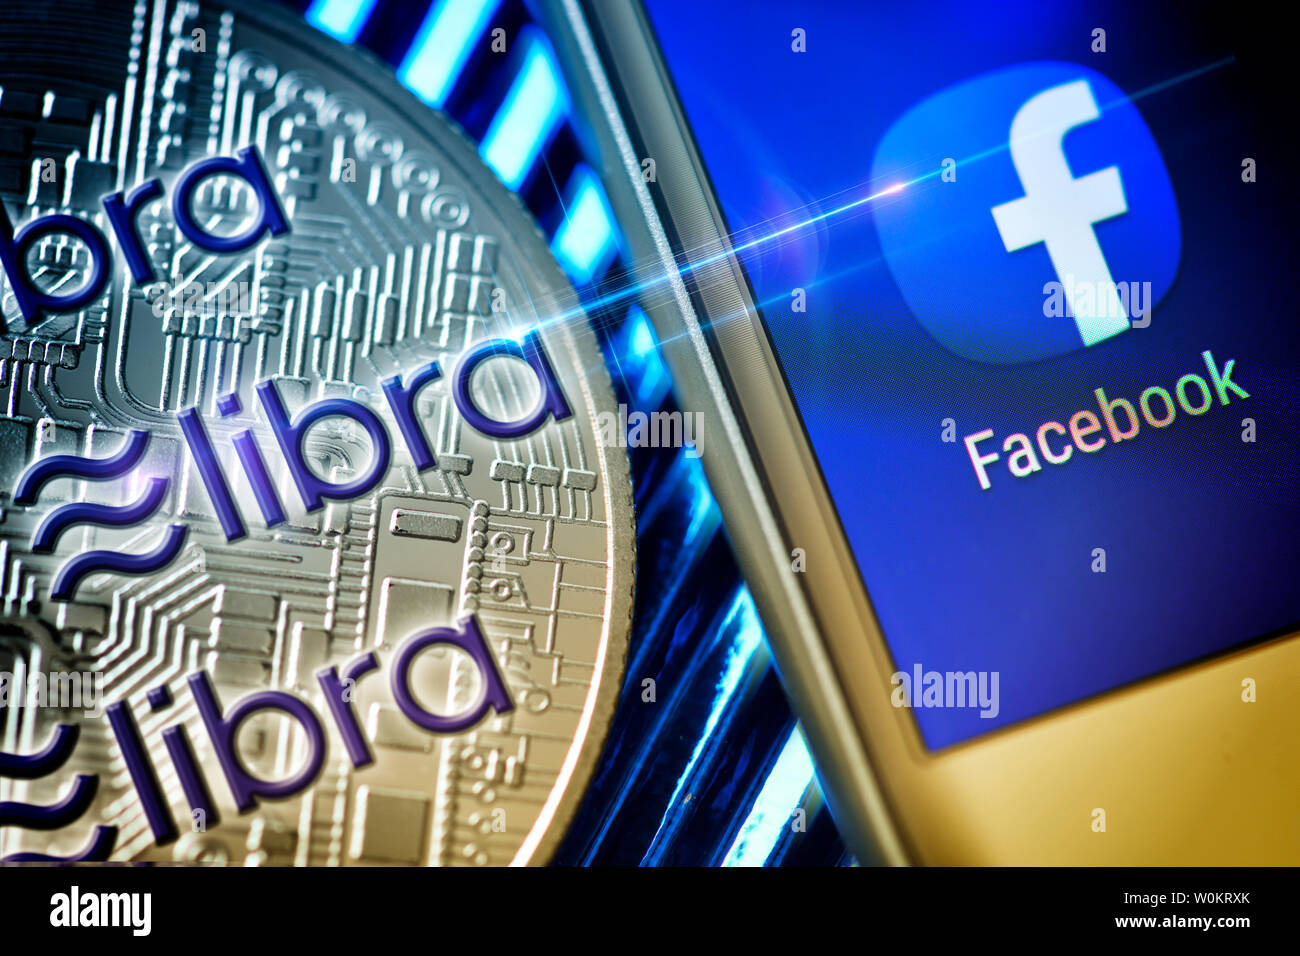 Application Facebook sur un écran de smartphone et de monnaie, la balance cryptocurrency Banque D'Images